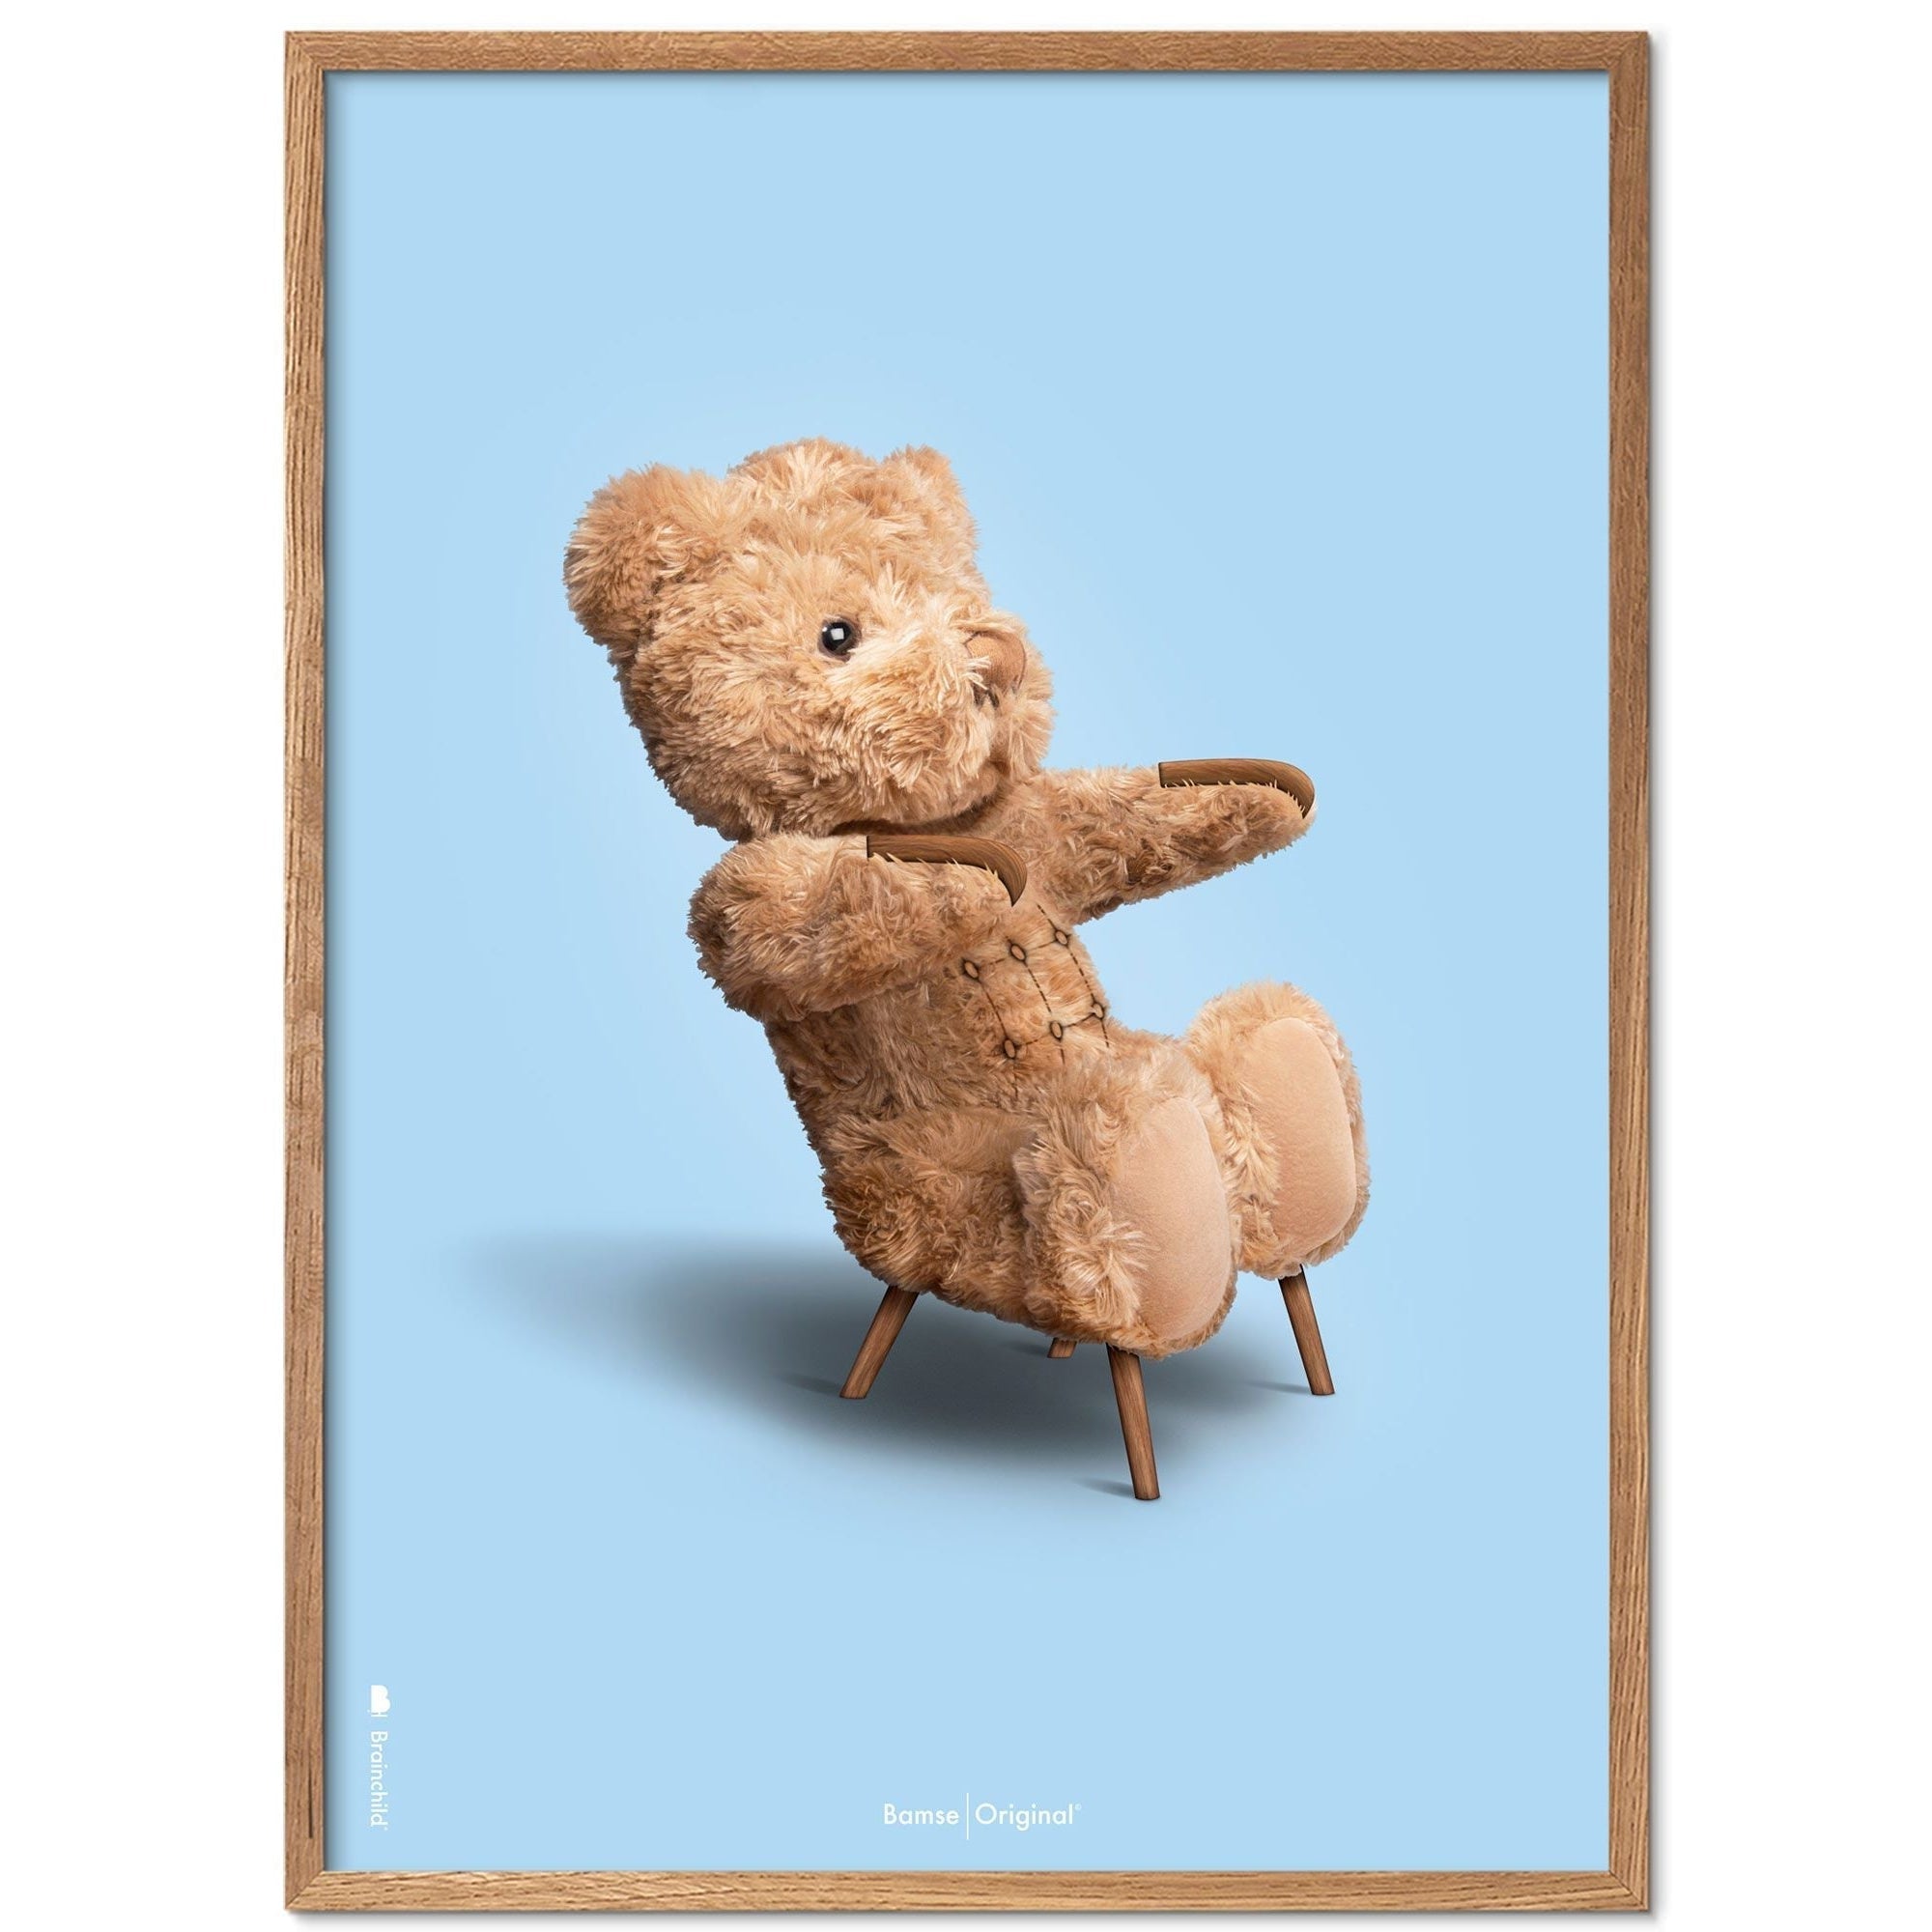 Brainchild Nallebjörn klassisk affischram i lätt träram 50x70 cm, ljusblå bakgrund